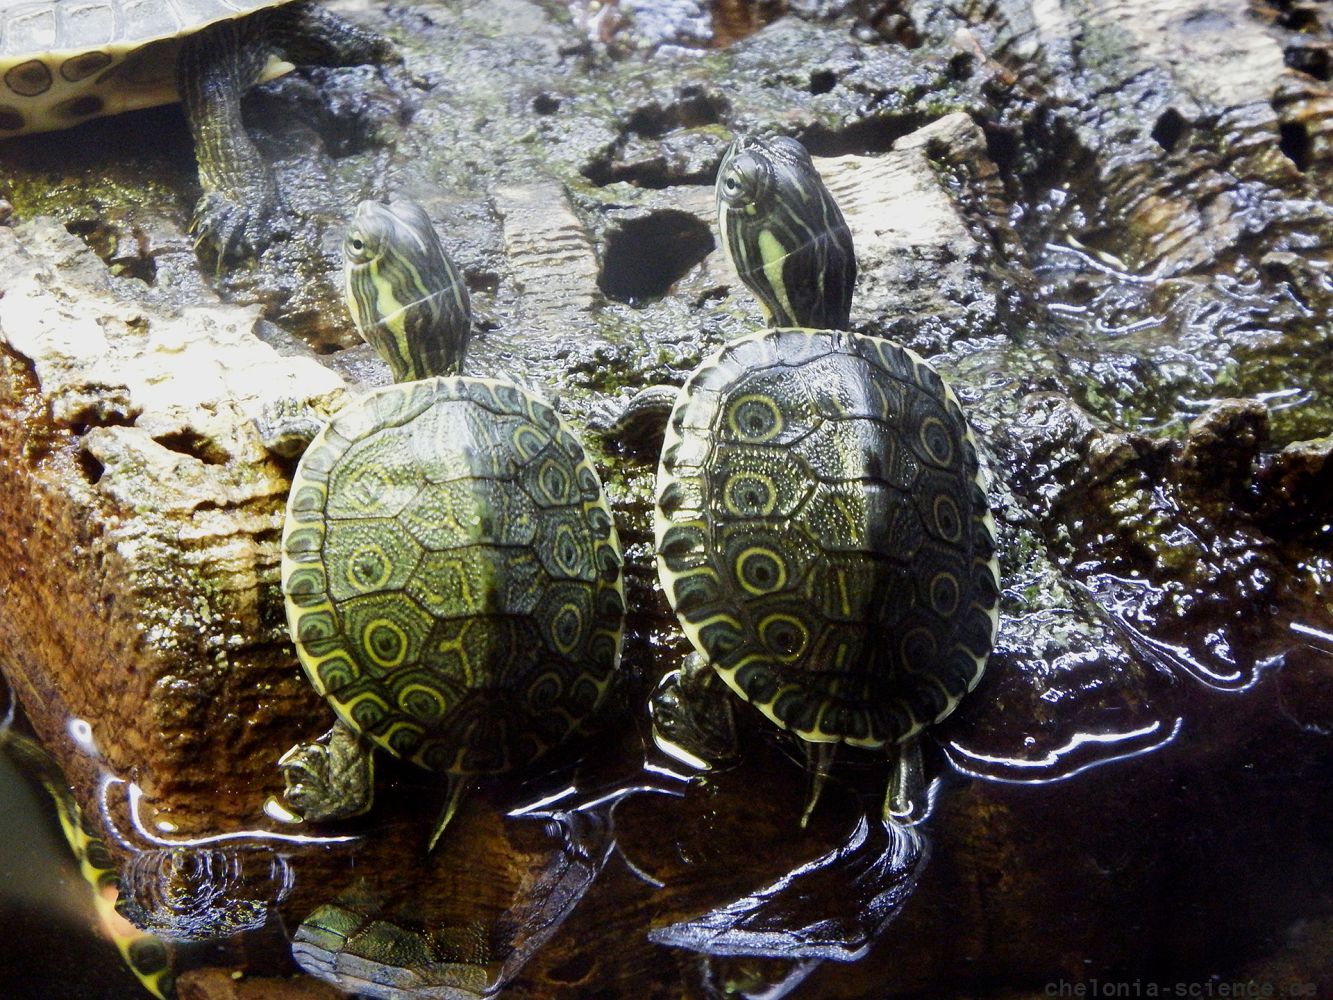 Mittelamerikanische Schmuckschildkröte, Trachemys venusta, – © Hans-Jürgen Bidmon